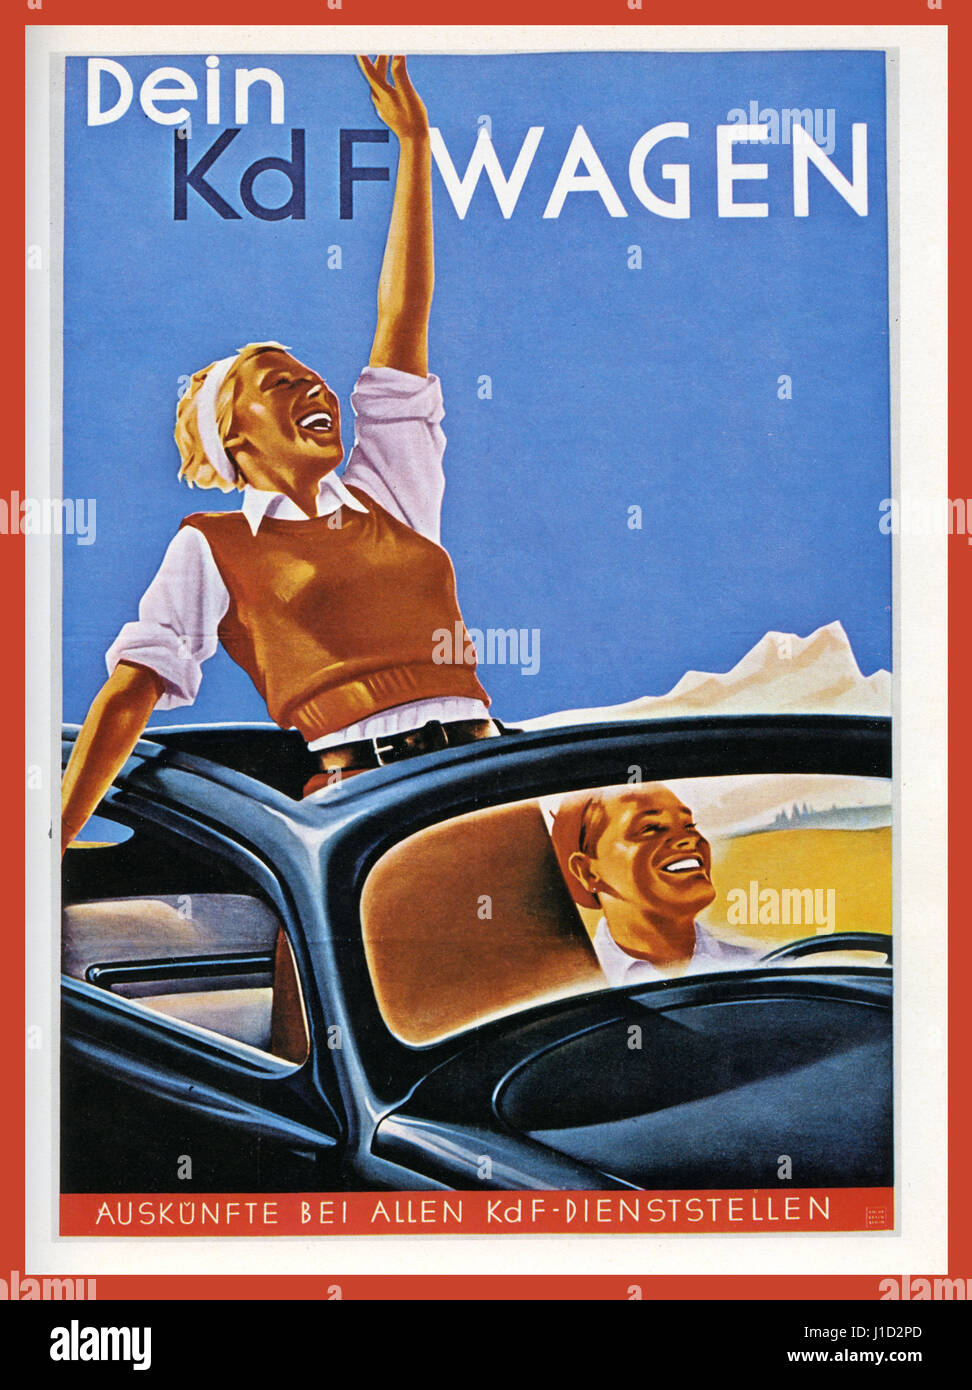 K d F WAGEN affiche de propagande l'Allemagne nazie des années 1930 Volkswagen avec 'Kraft durch Freude' KDF-WAGEN (force par la joie) voiture à toit ouvert avec heureux idéaliste blond couple Aryan allemand appréciant 'la voiture du peuple' Allemagne nazie Banque D'Images